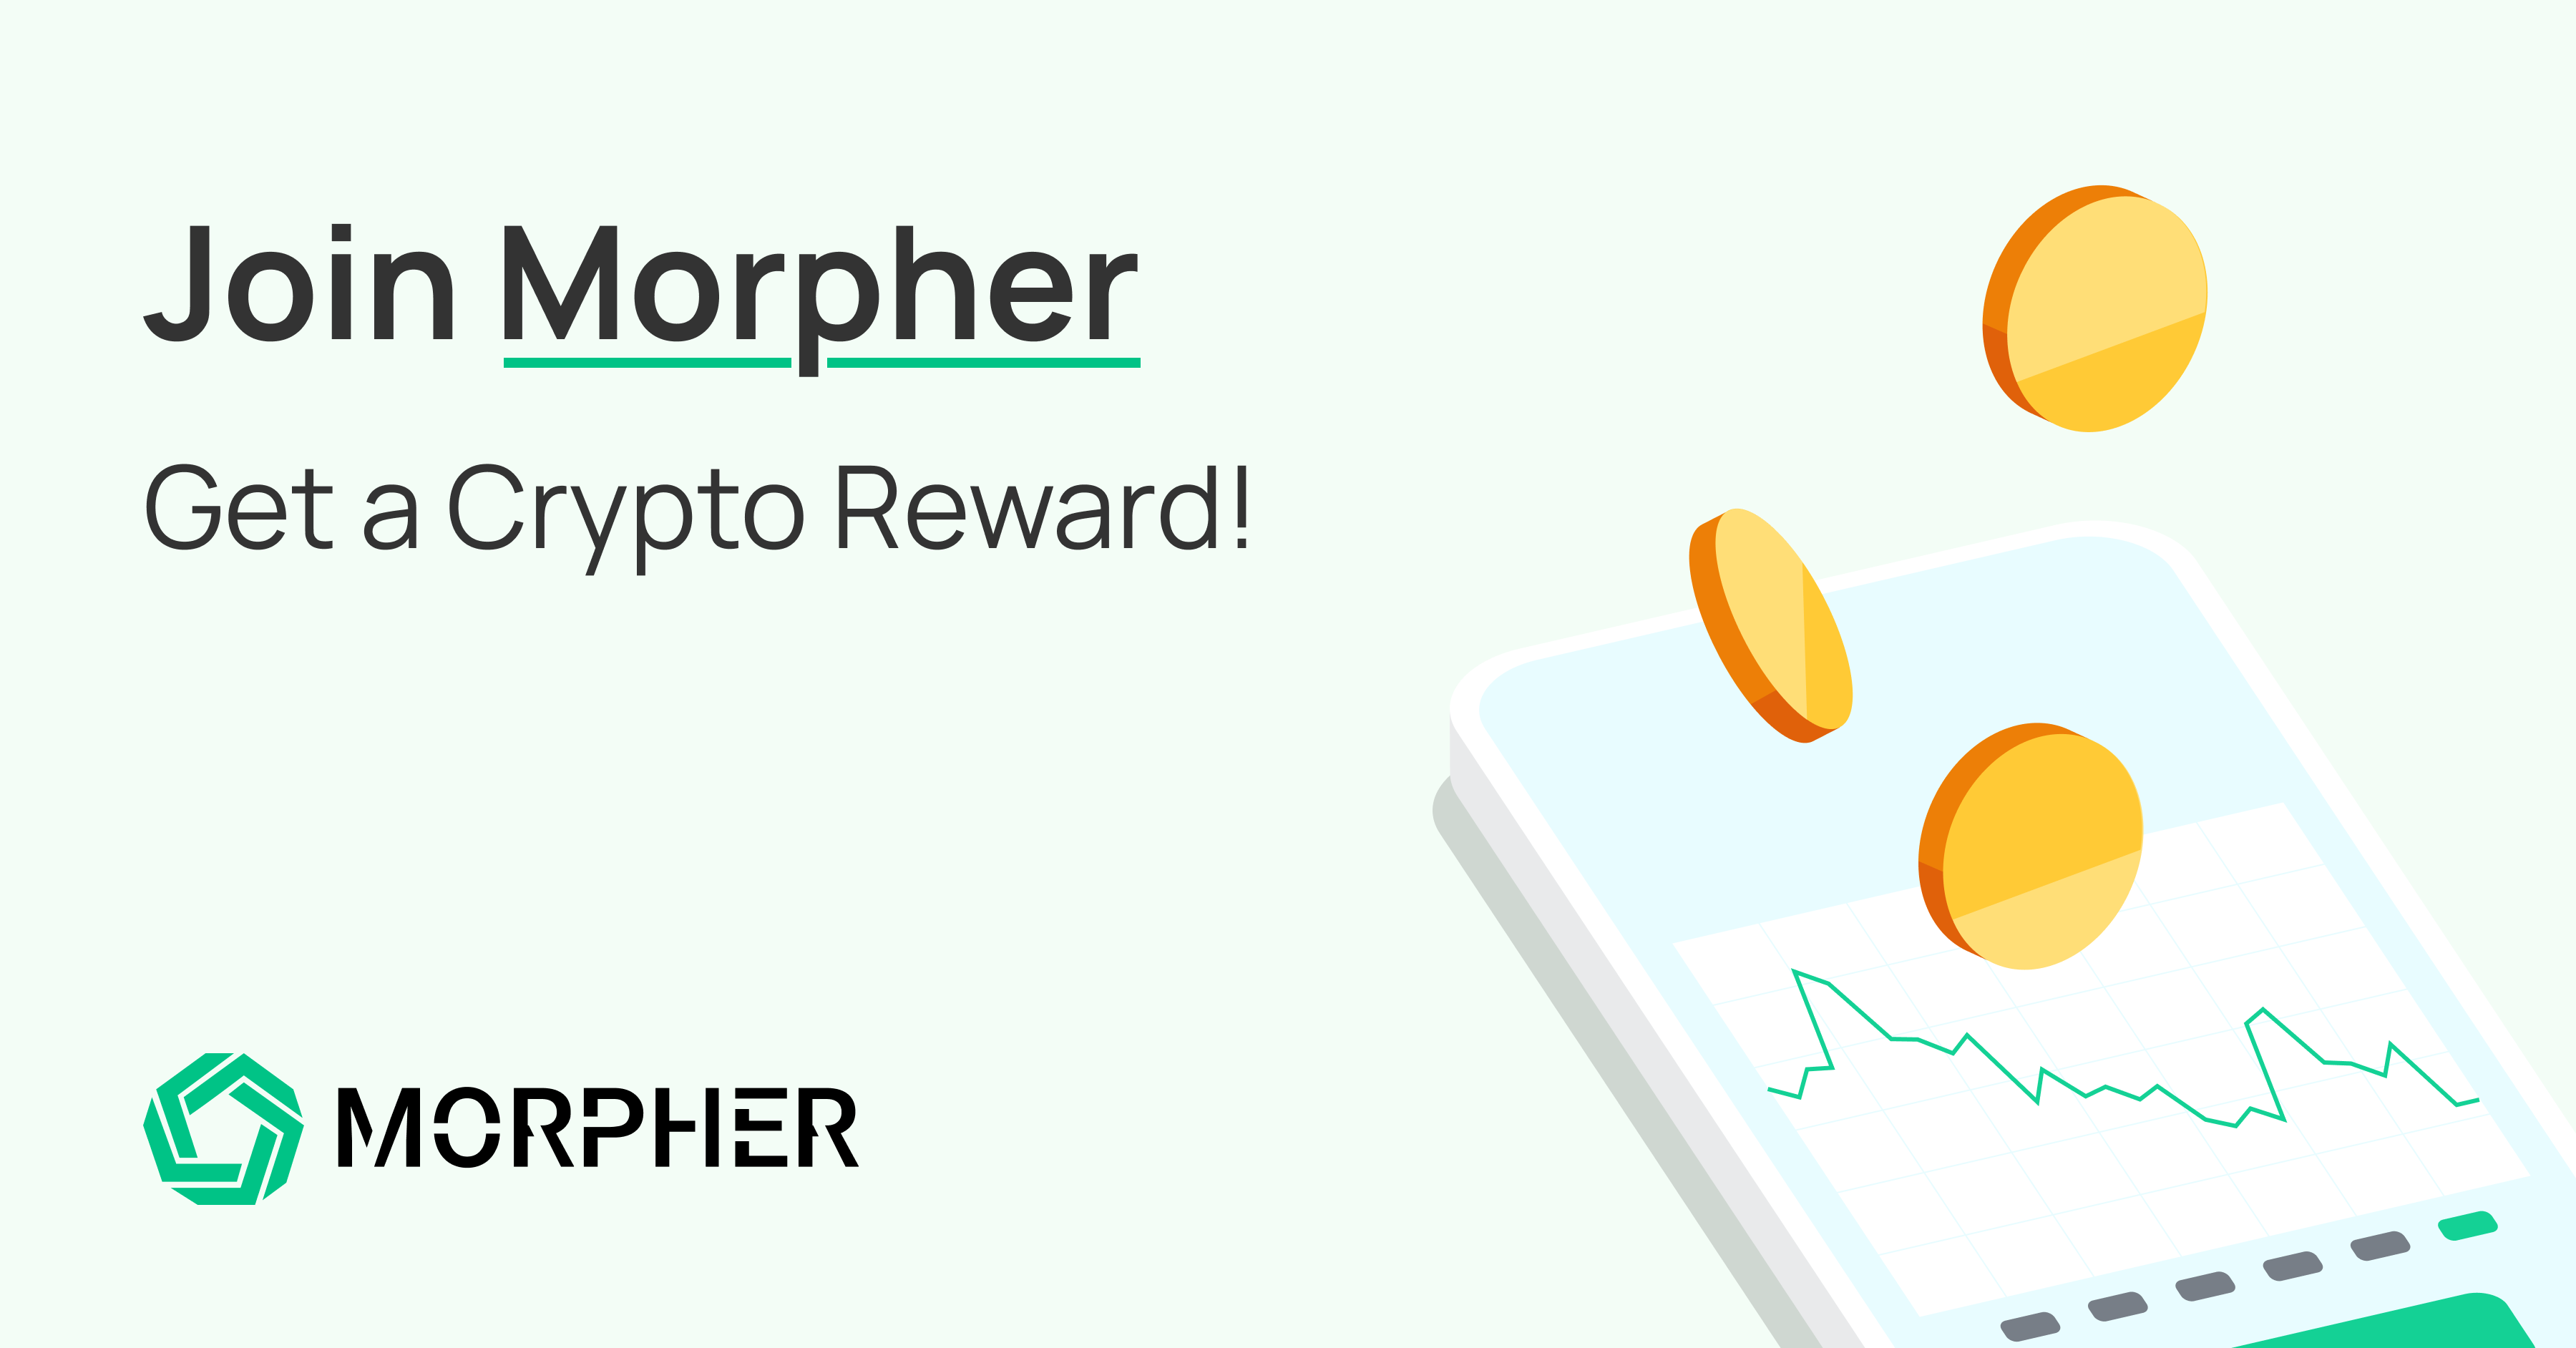 morpher.com